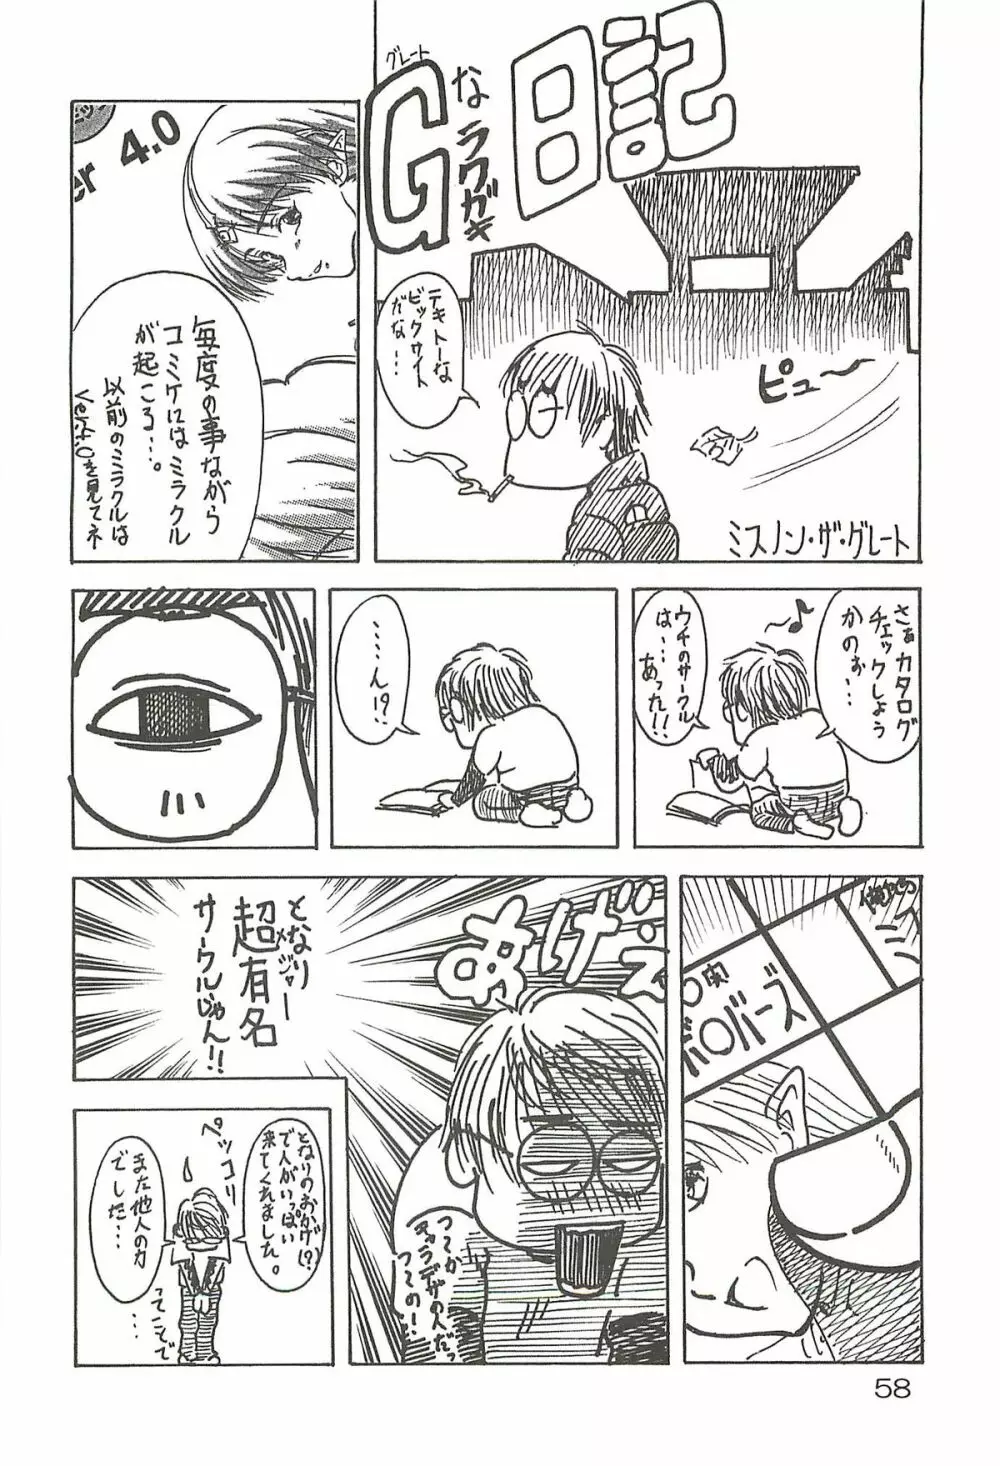 追放覚悟 Special edition Phase1 Page.57